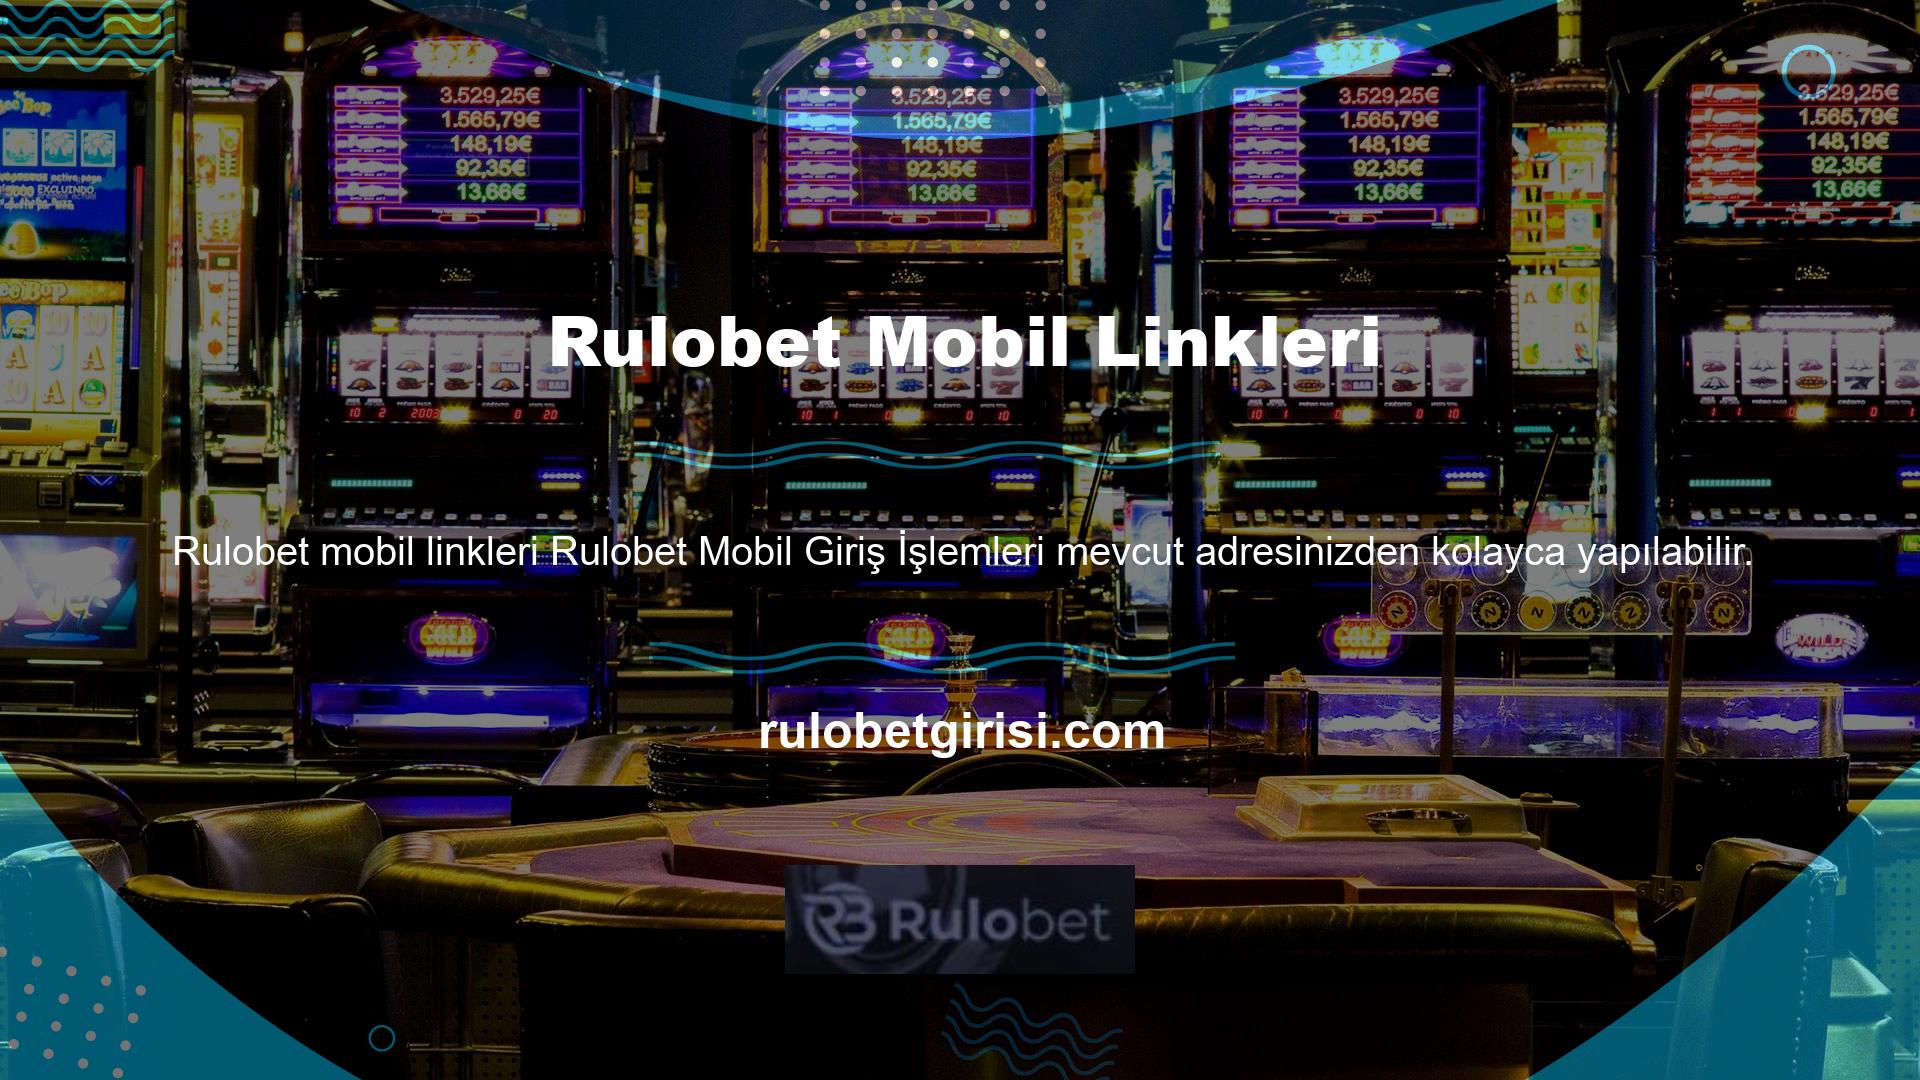 Akıllı telefonunuzdan veya tabletinizden Rulobet mobil ana sayfasına erişin ve mobil cihazınızdan siteye katılın